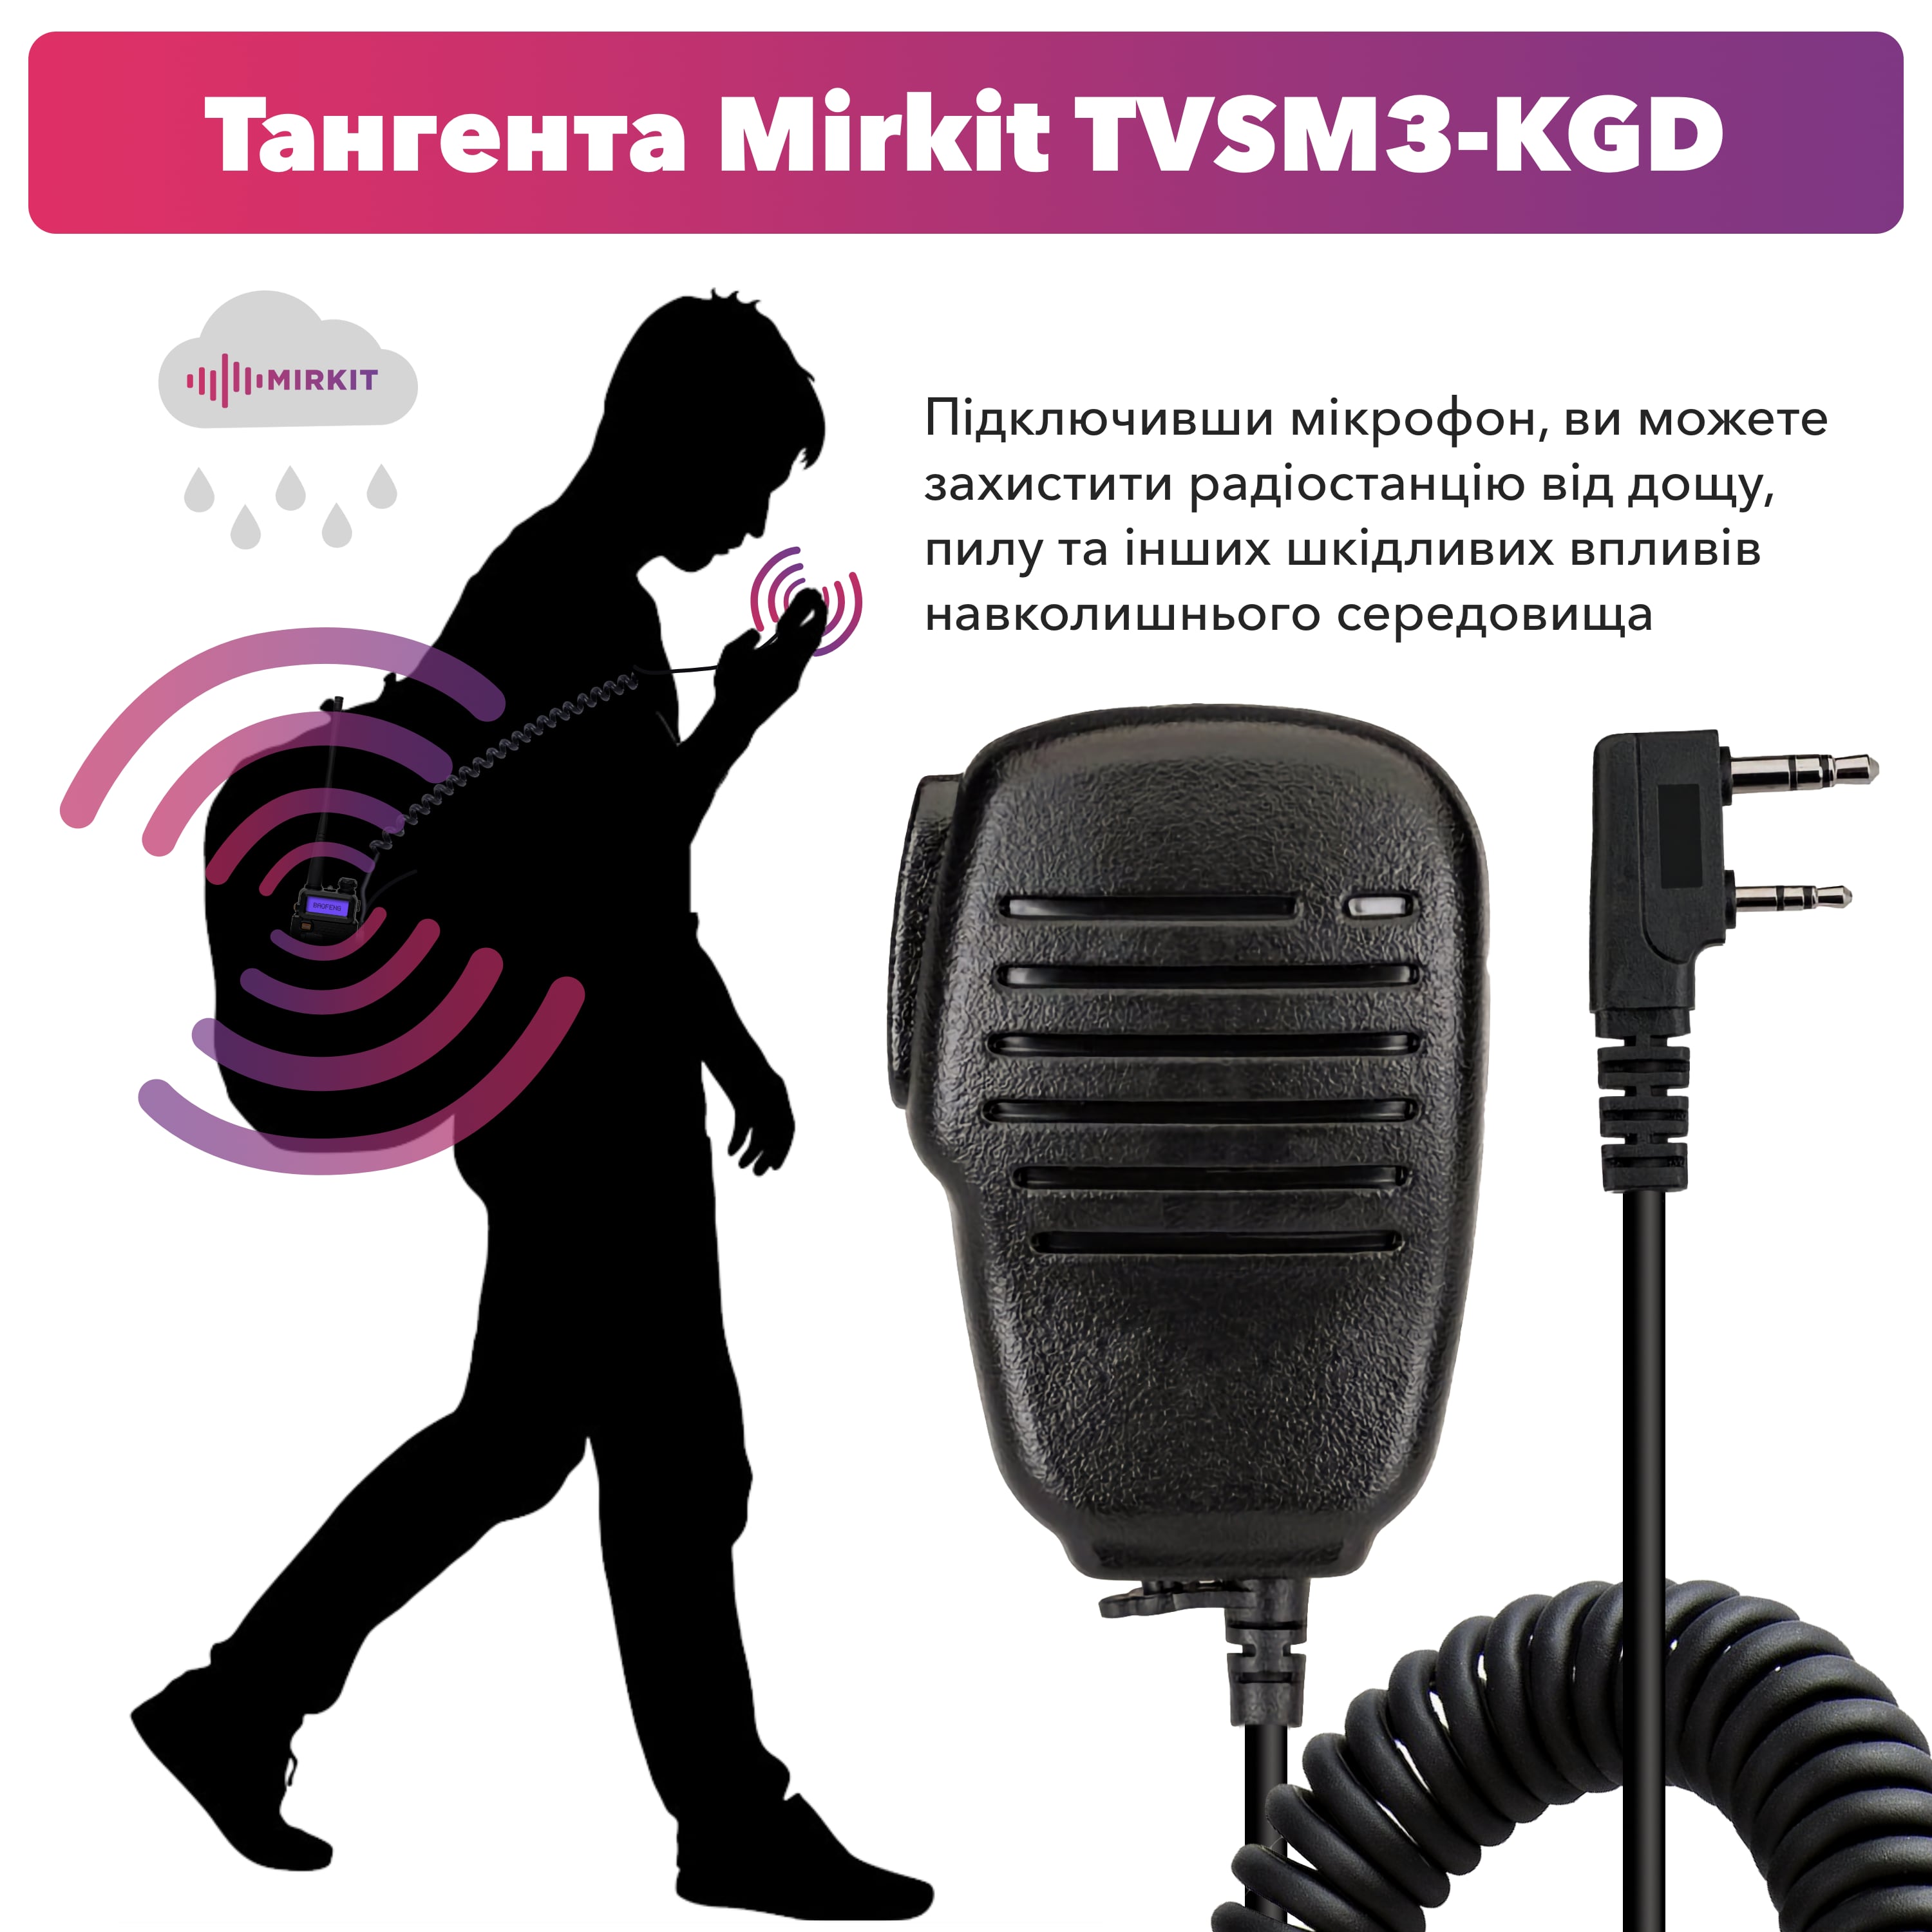 Тангента Mirkit TVSM3-KGD - фото 2